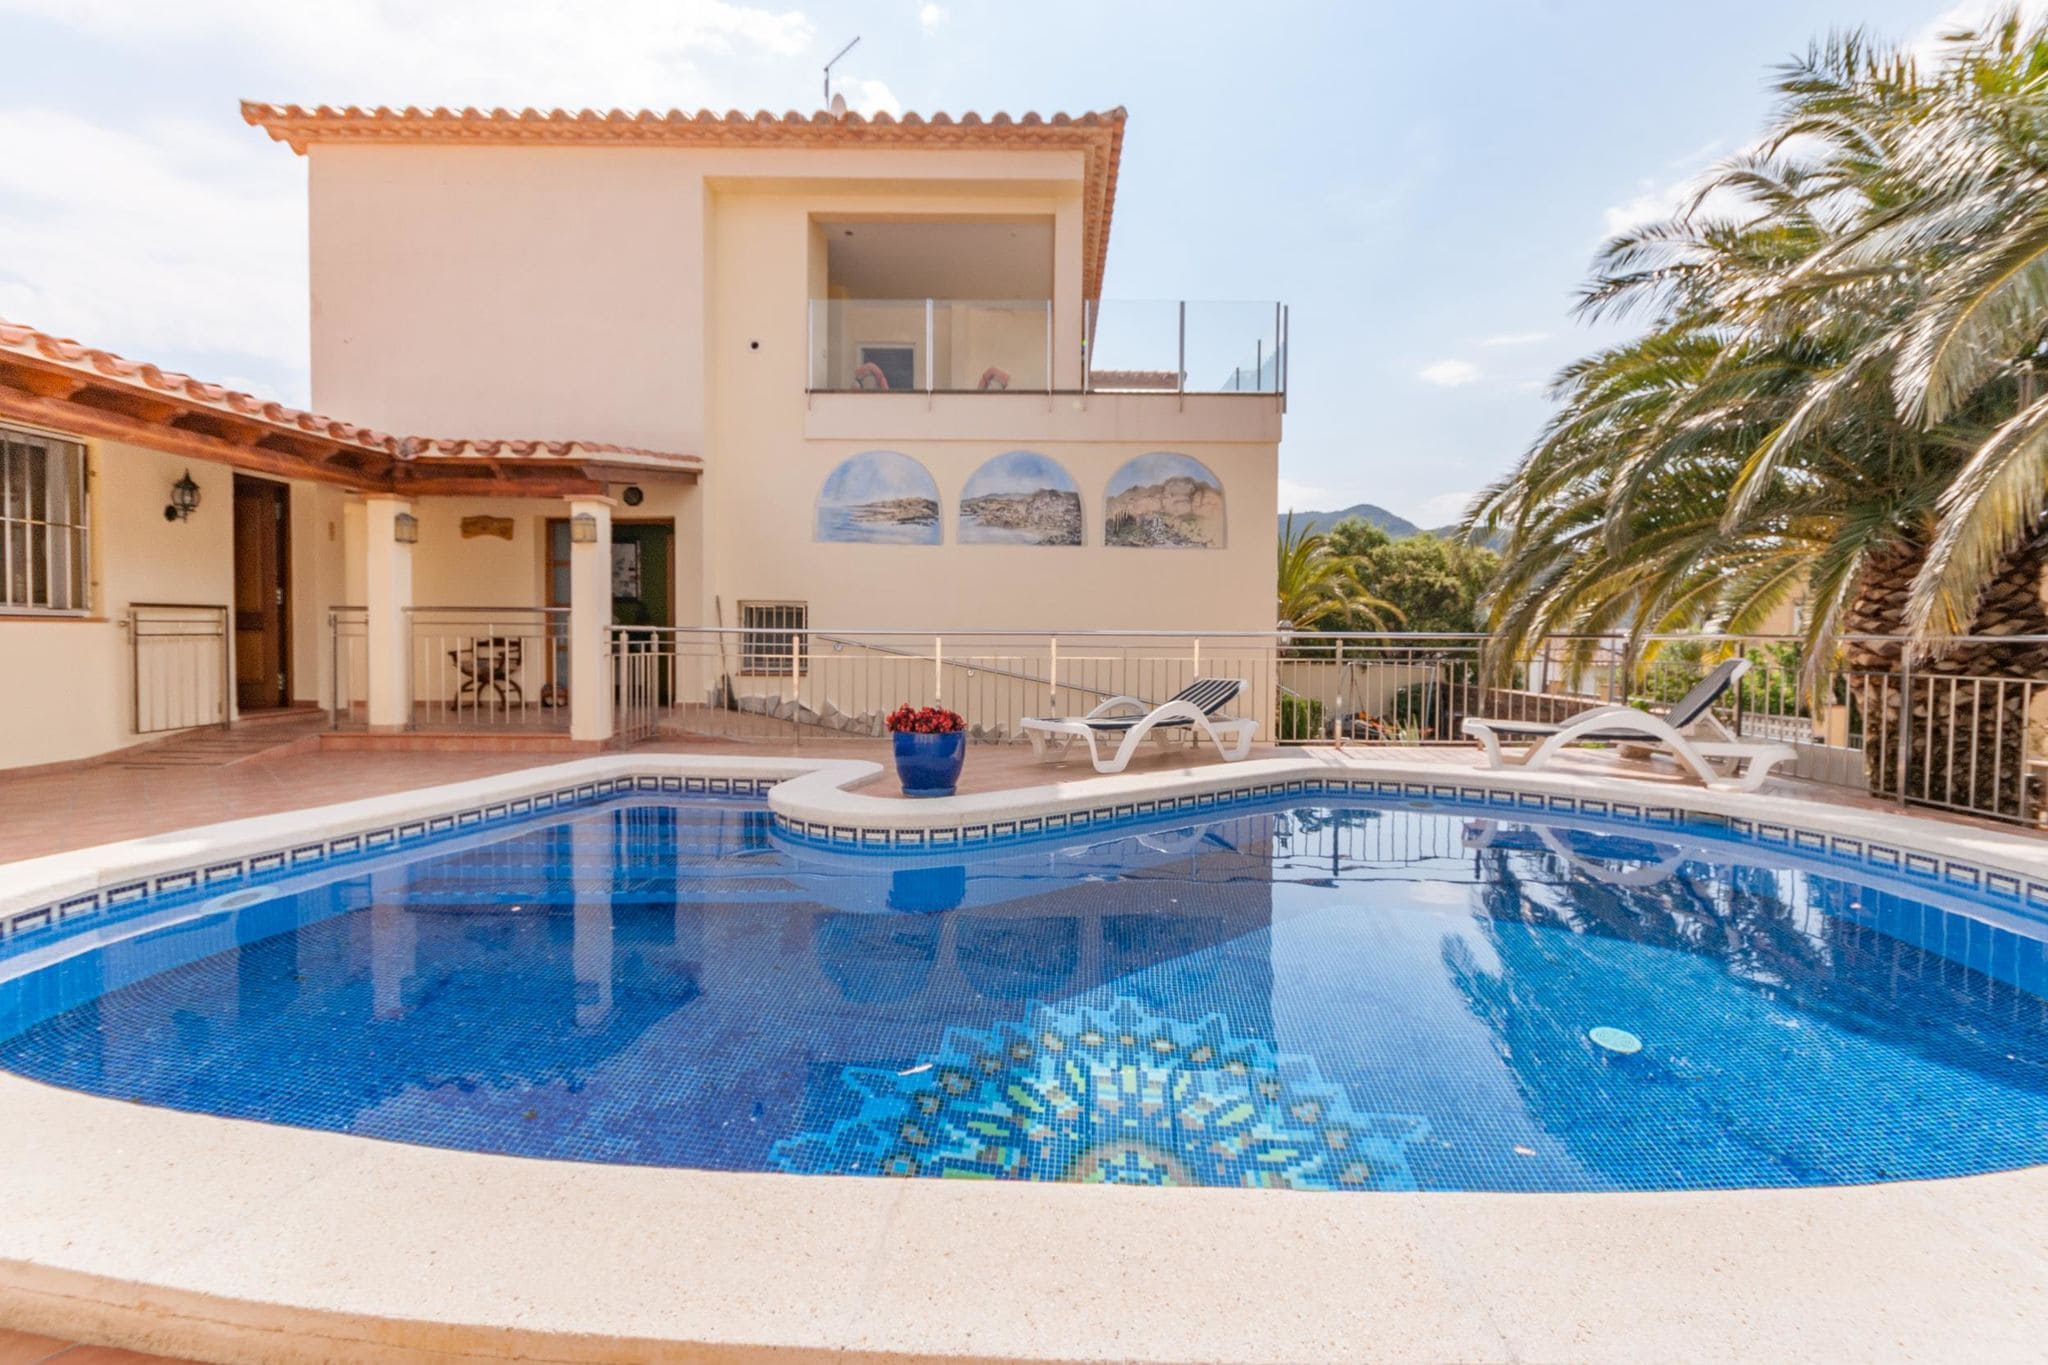 Modern appartement in Villa met zwembad en uitzicht op de baai van Roses